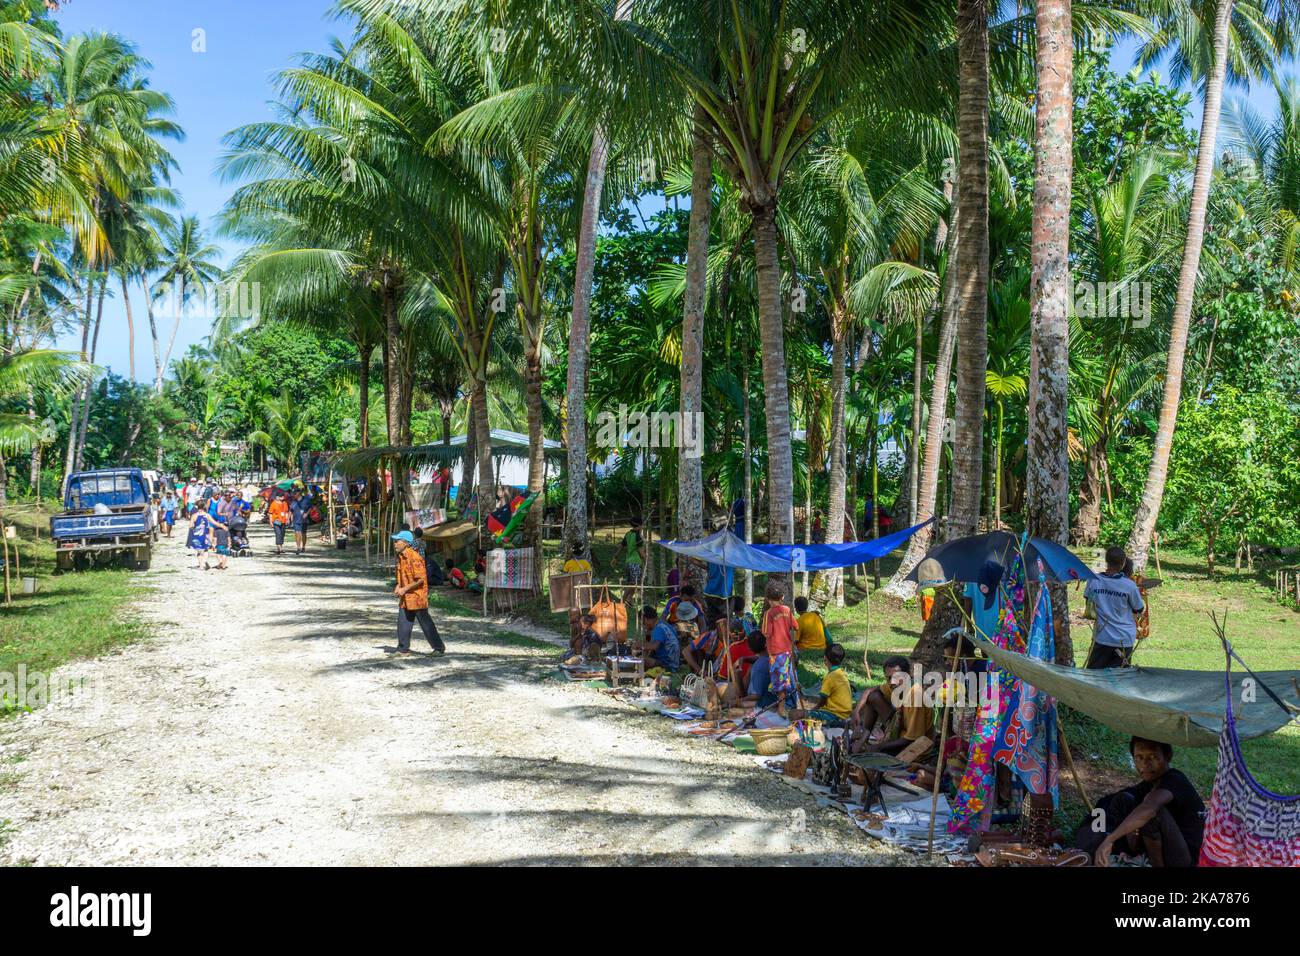 Gli abitanti del villaggio si allineano sulla strada vendendo artigianato e souvenir per visitare i passeggeri delle navi da crociera. Isola di Kiriwina Papua Nuova Guinea. Foto Stock